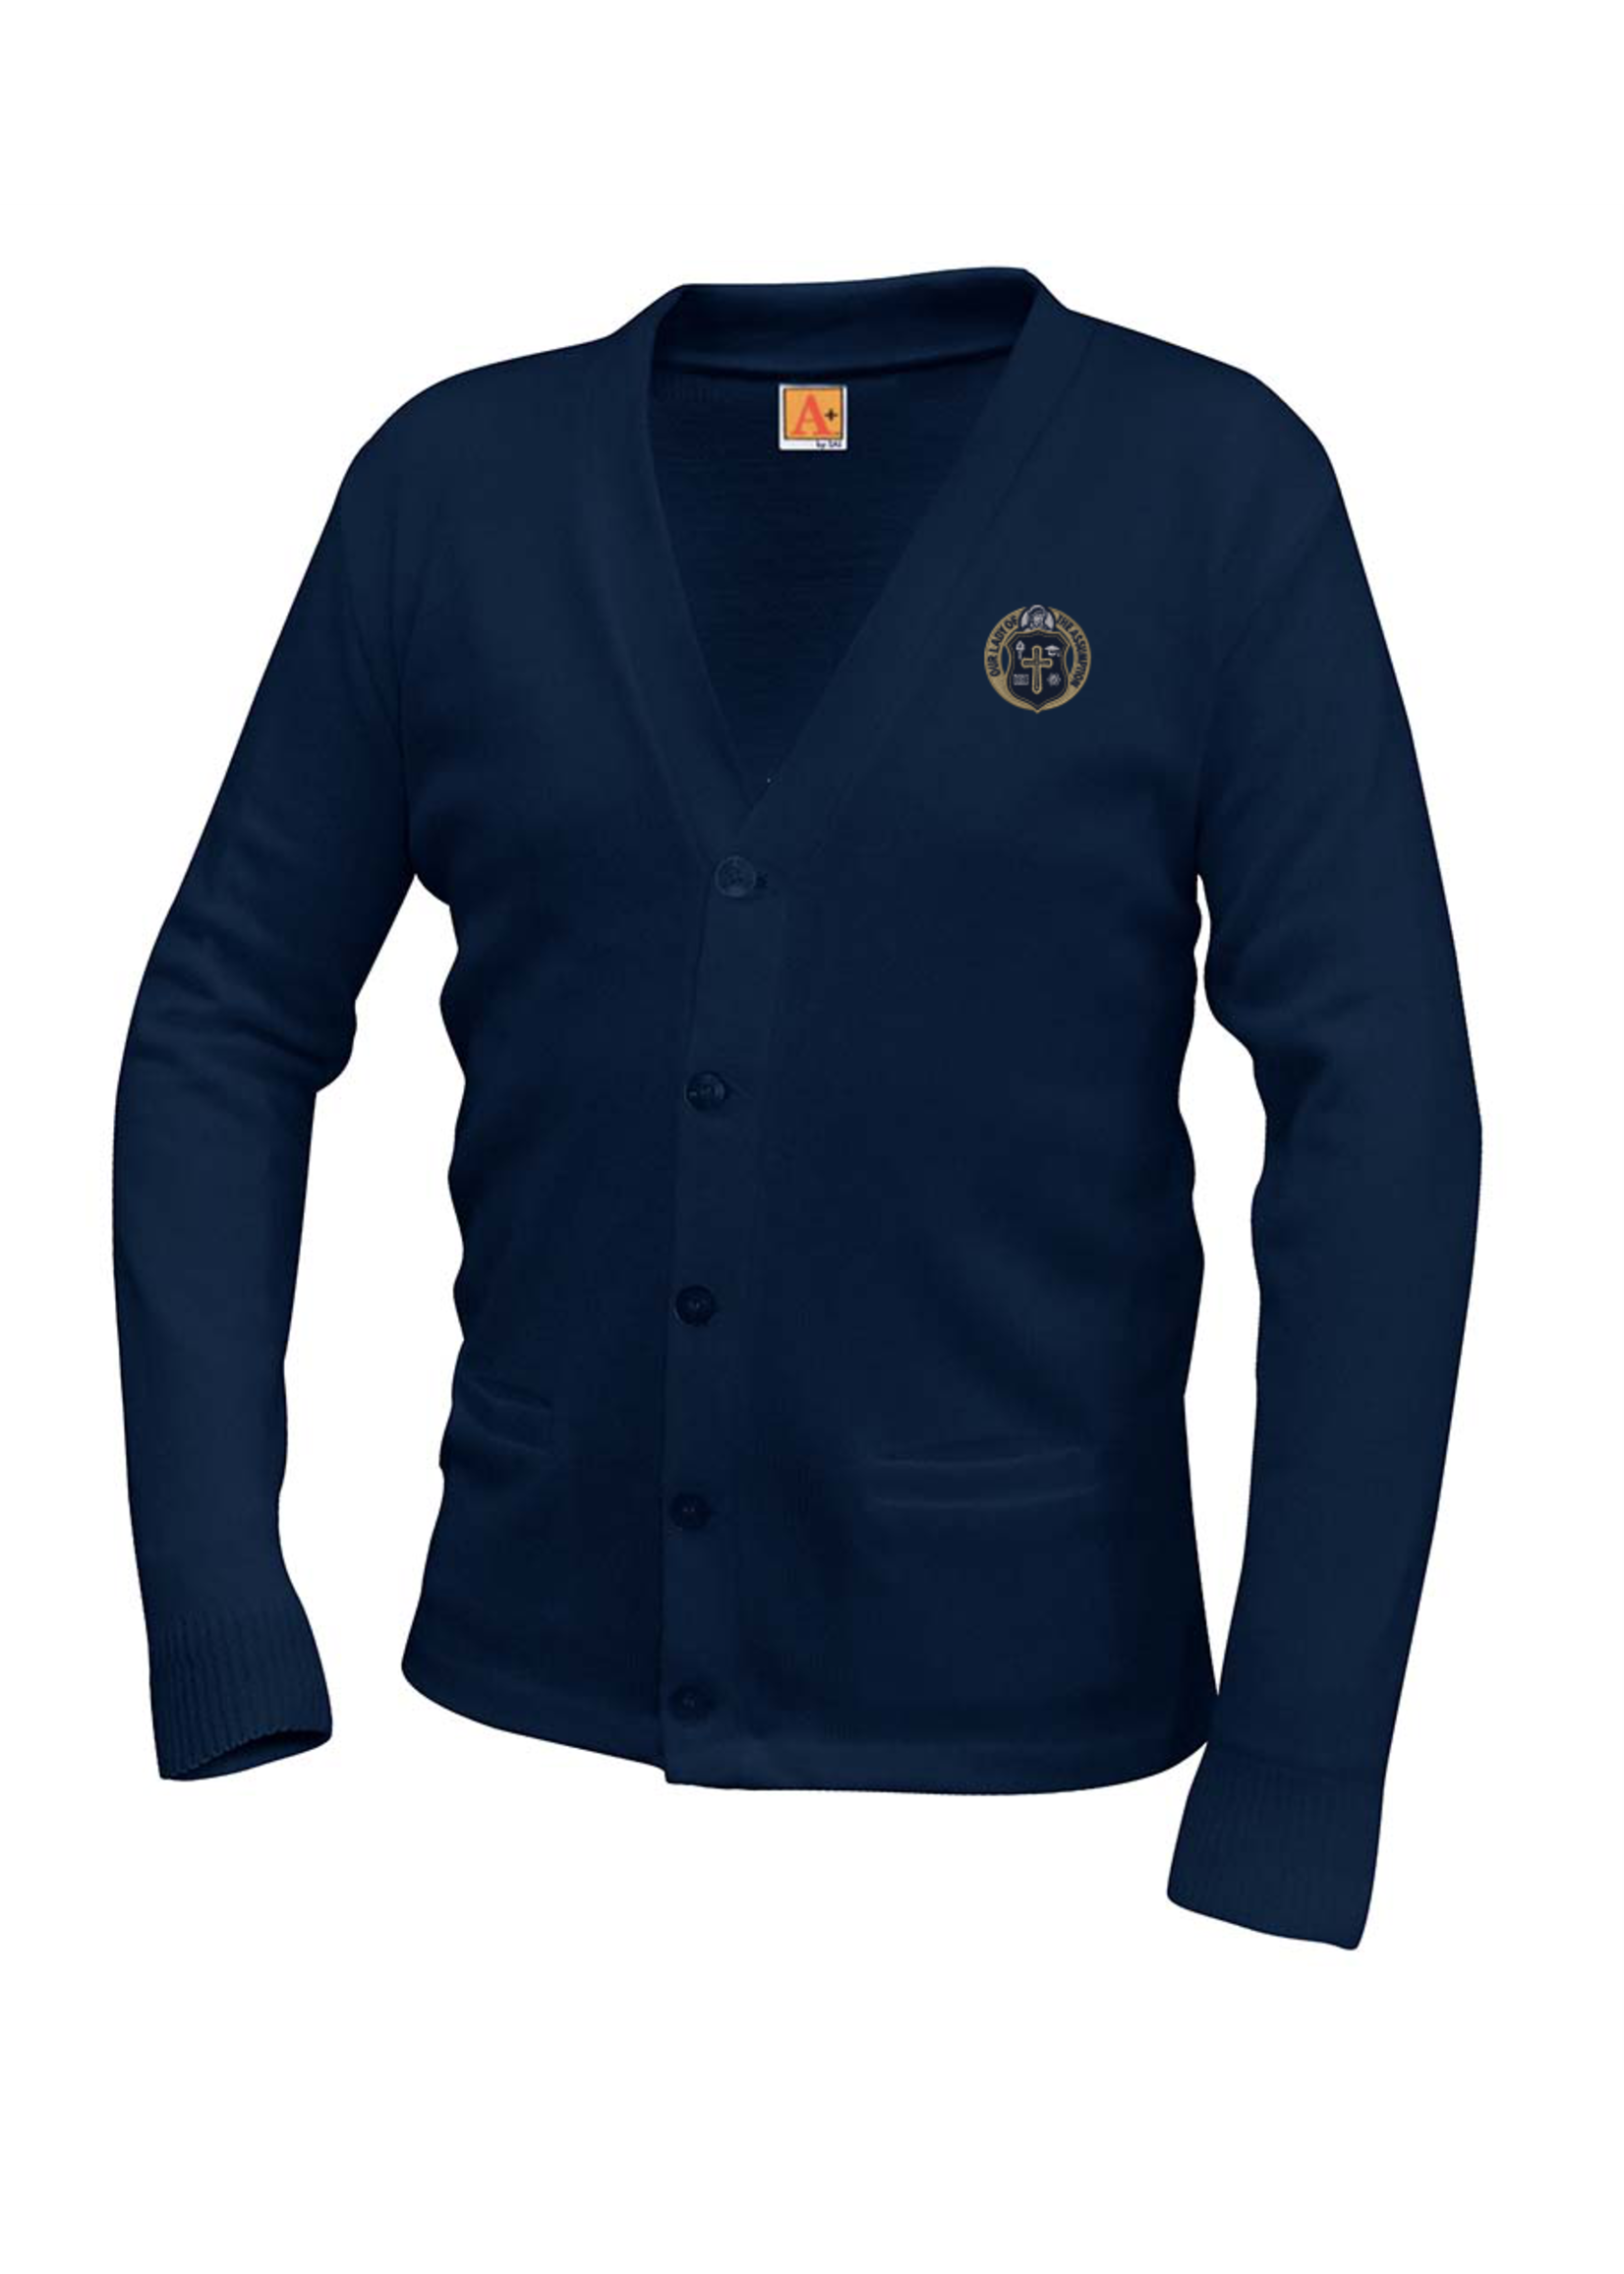 OLA Navy V-neck cardigan sweater with pockets